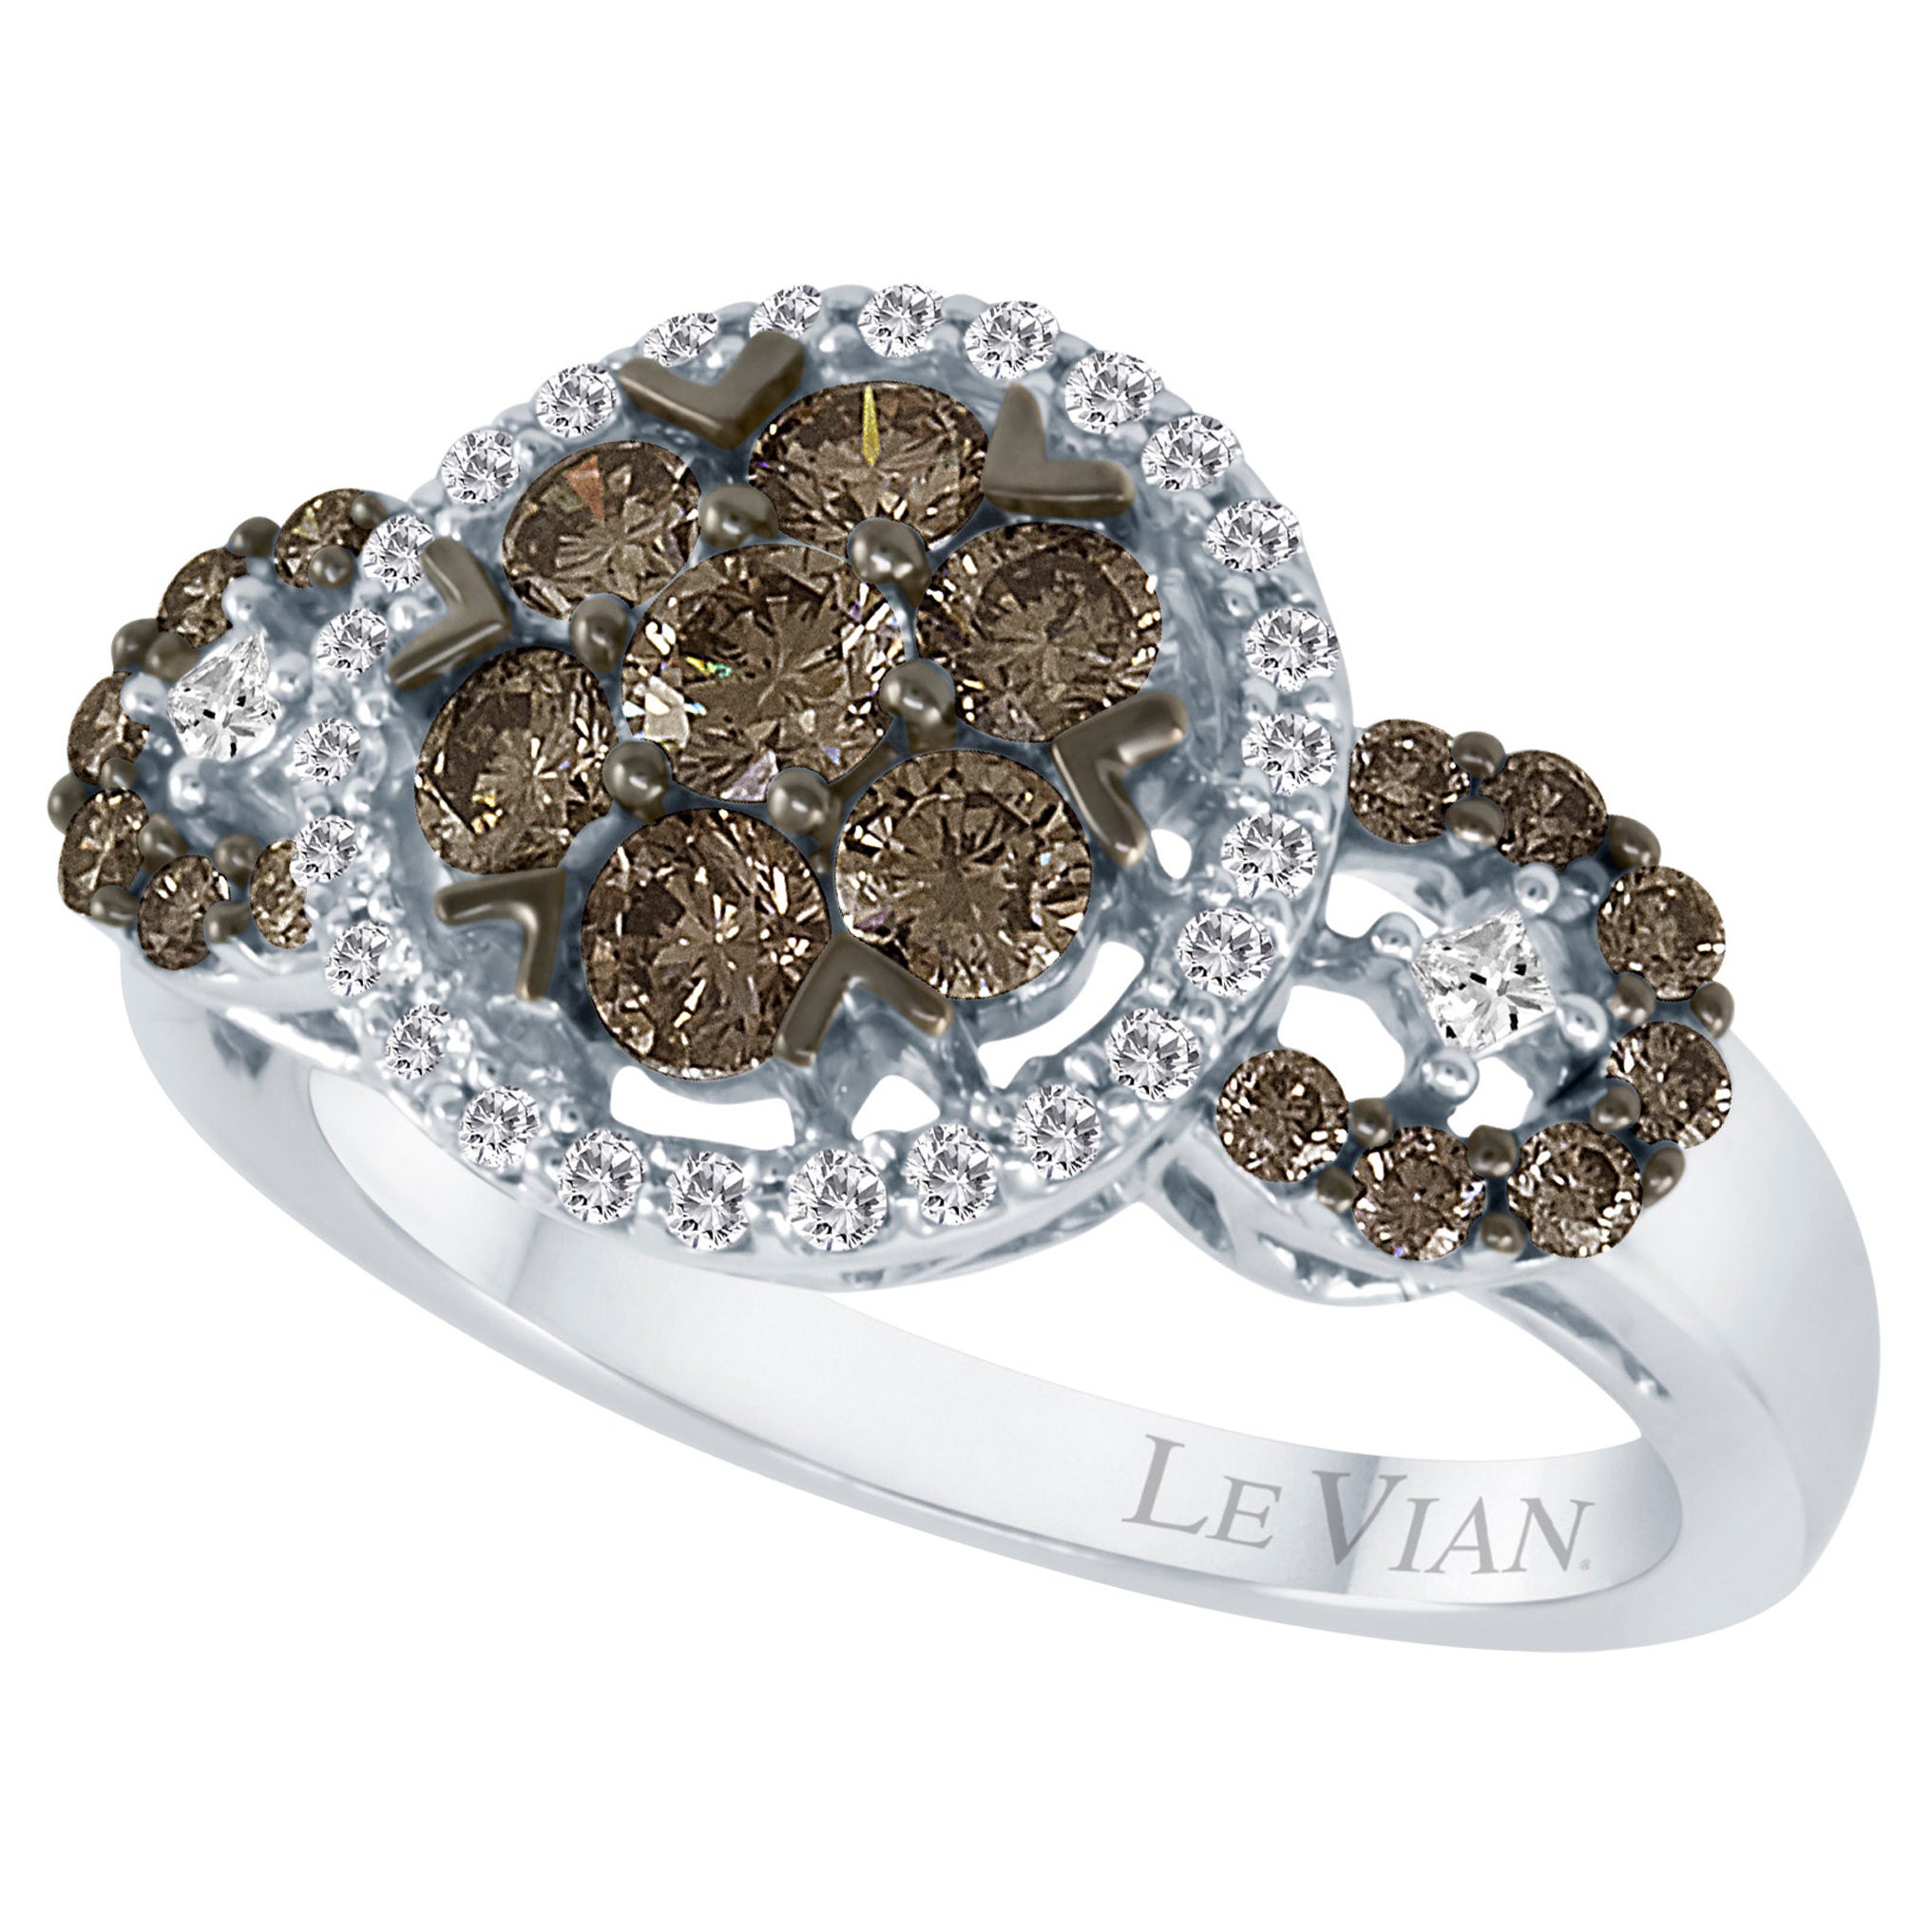 Schöner, runder Ring von LeVian aus 14 Karat Weißgold mit schokoladenbraunen Diamanten